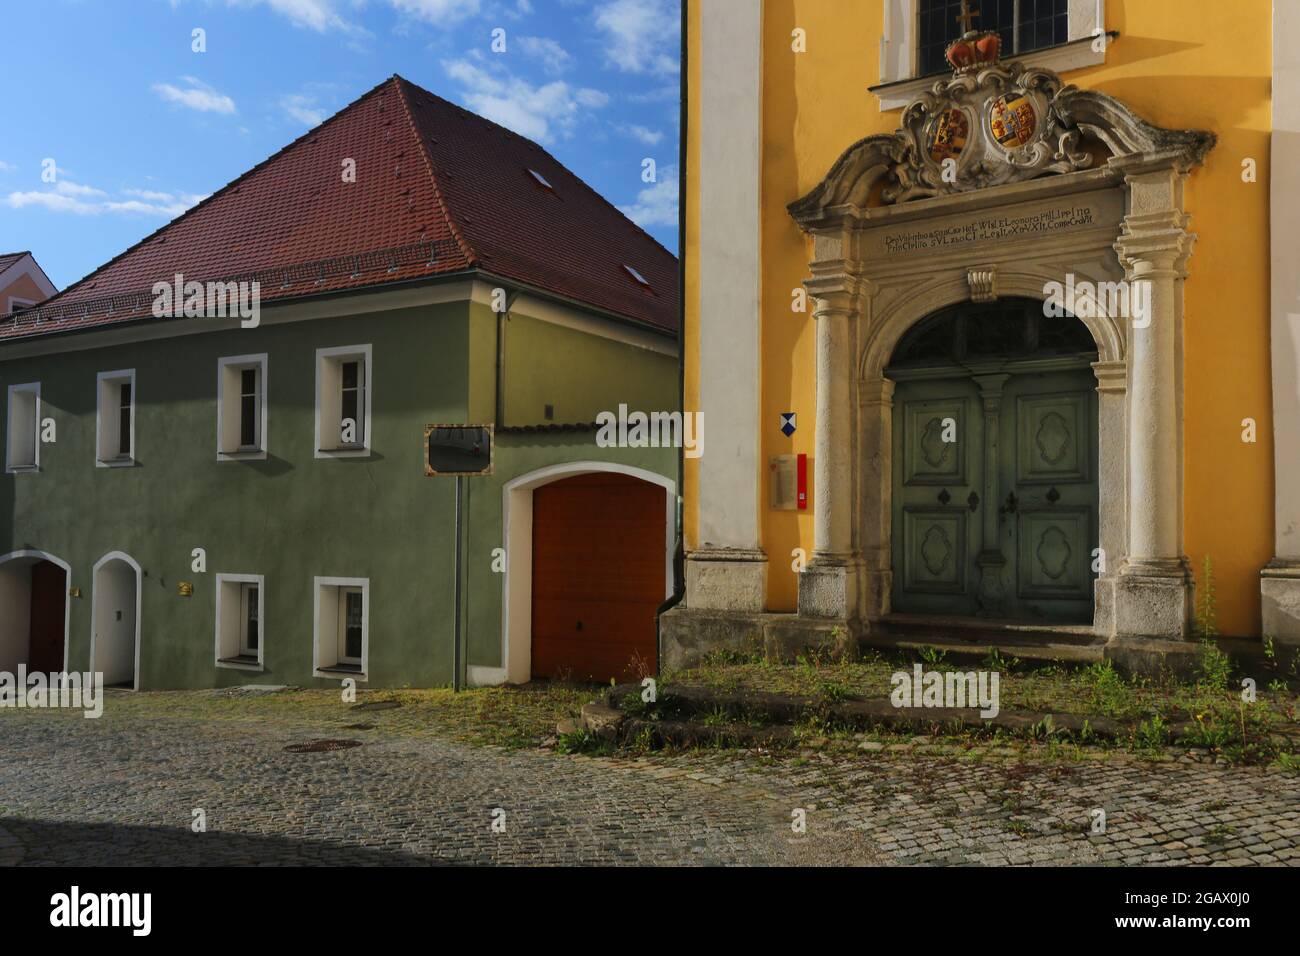 Altstadt oder Innenstadt mit historischen Kloster oder Kirche mit Eingangsportal dramatischen Wolken in Sulzbach Rosenberg, Amberg, Oberpfalz, Bayern! Stock Photo